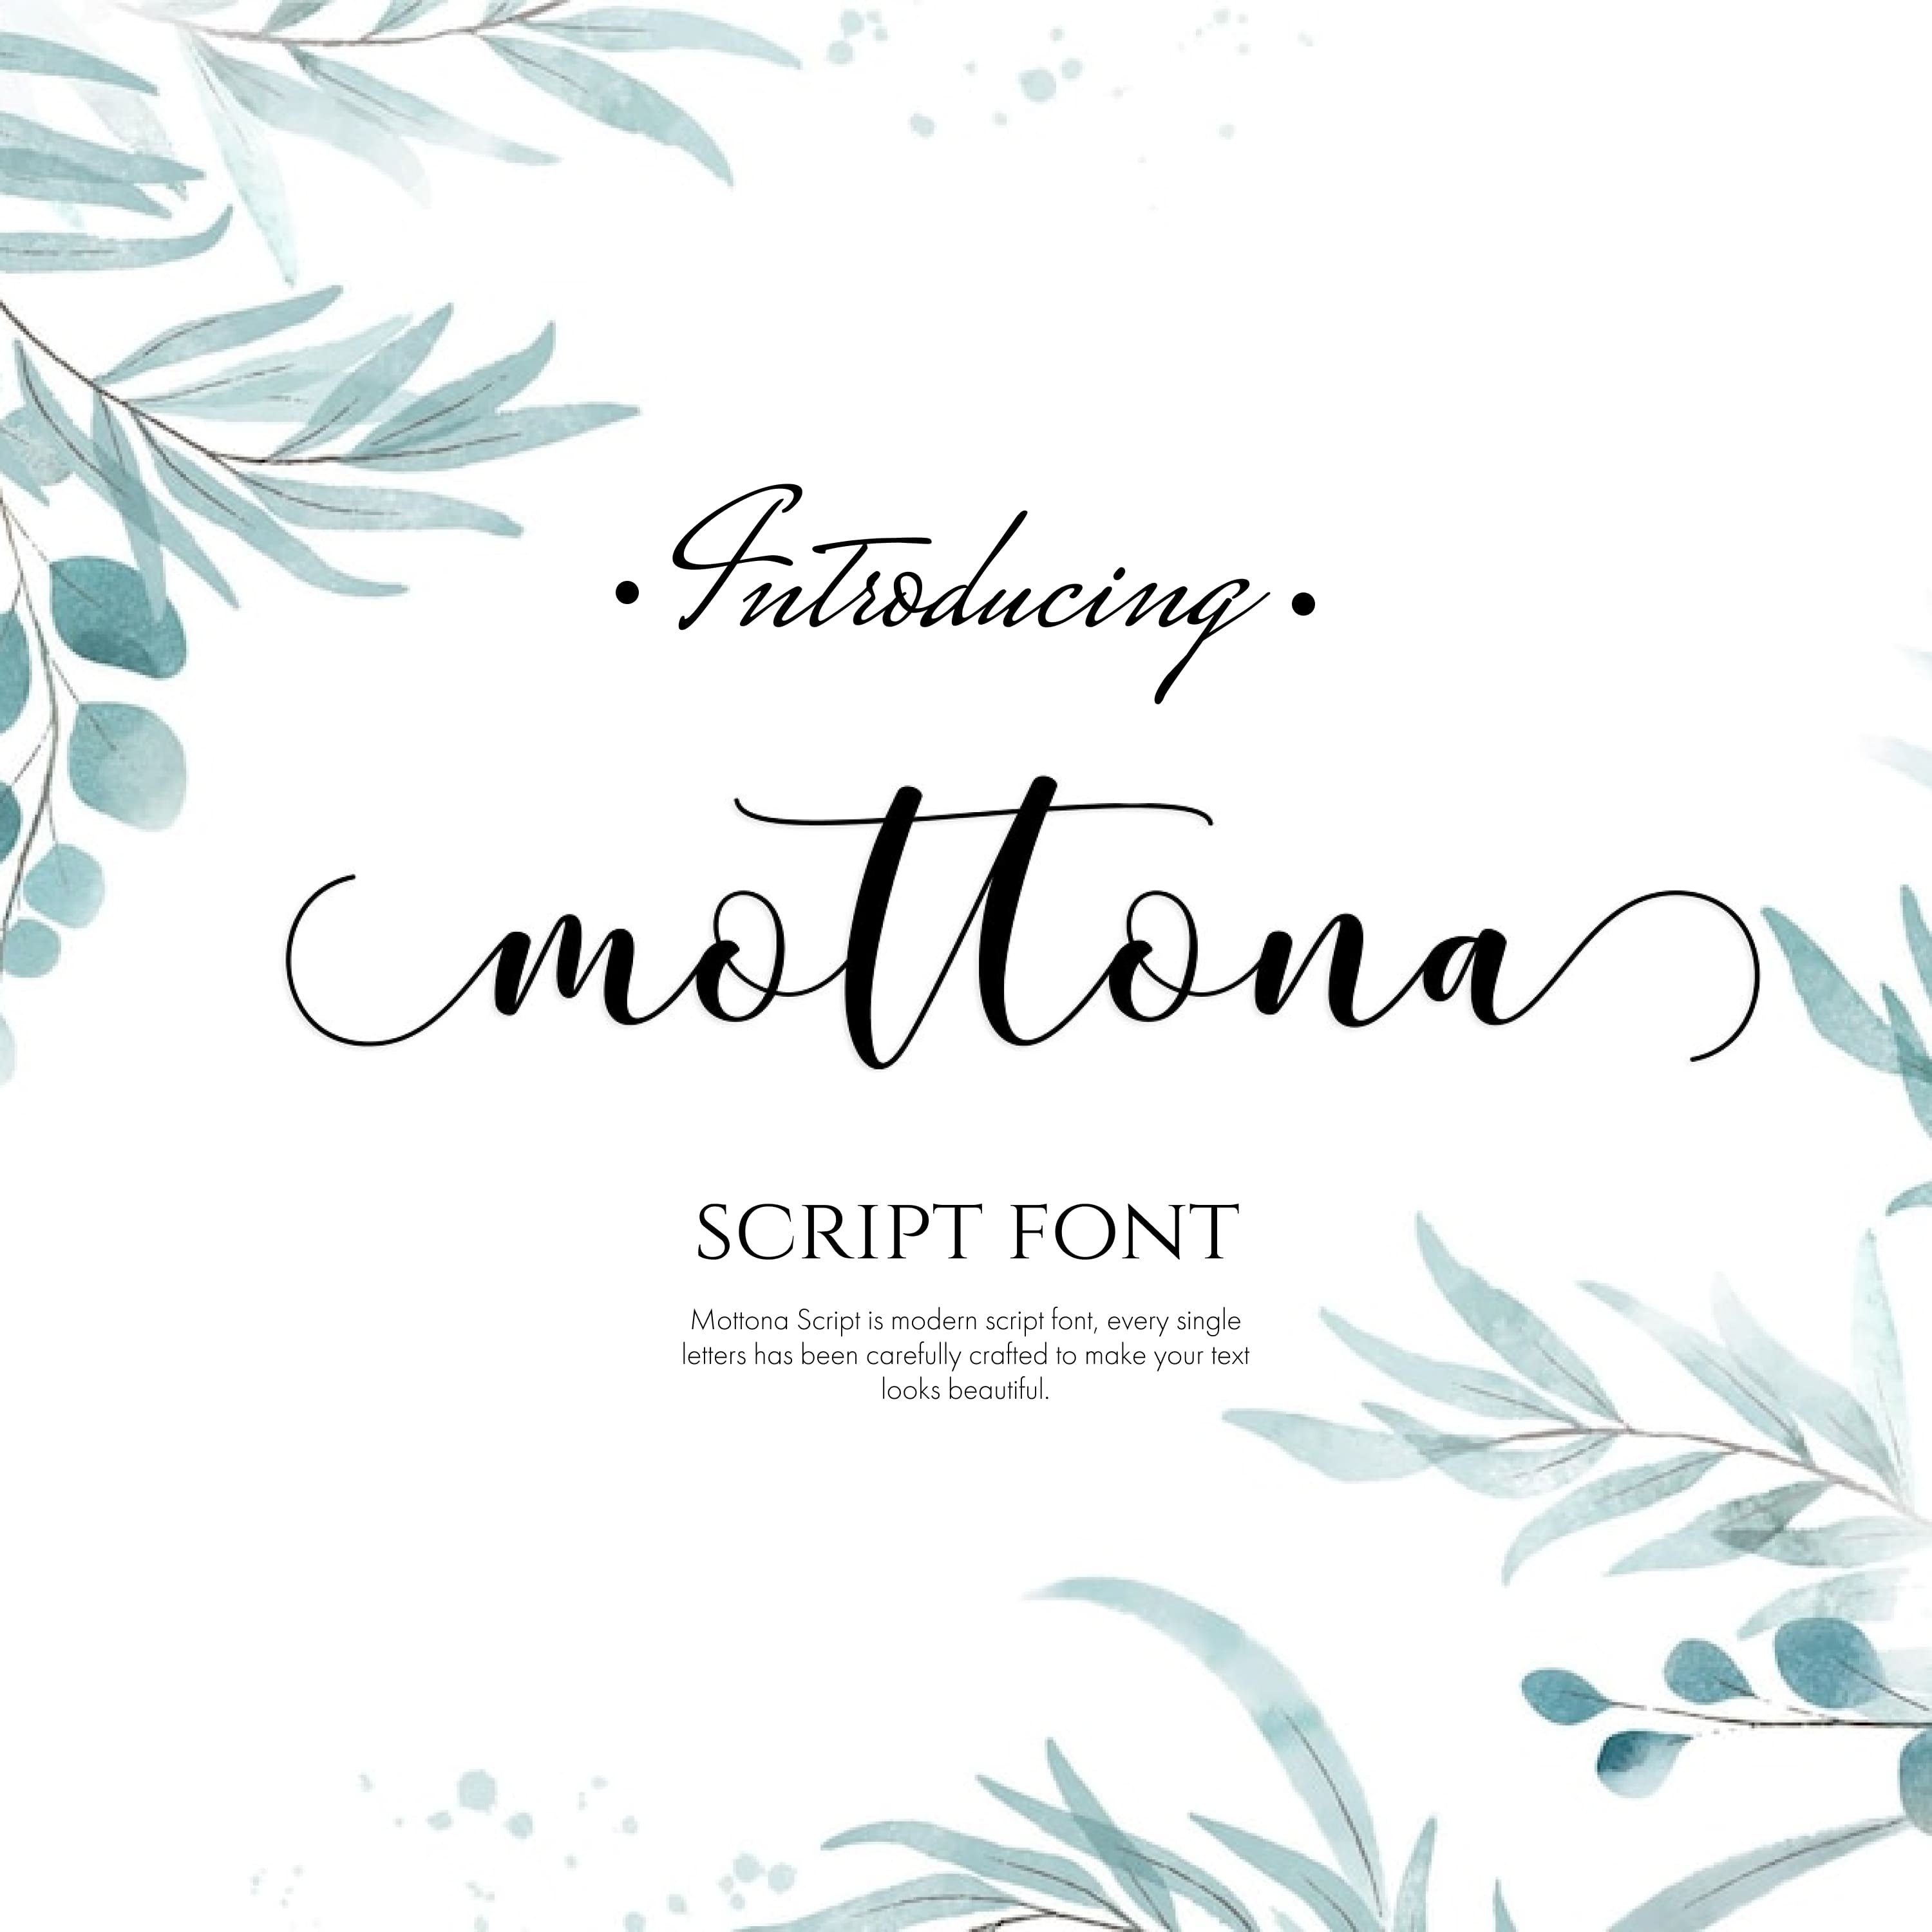 Mottona Script Font.